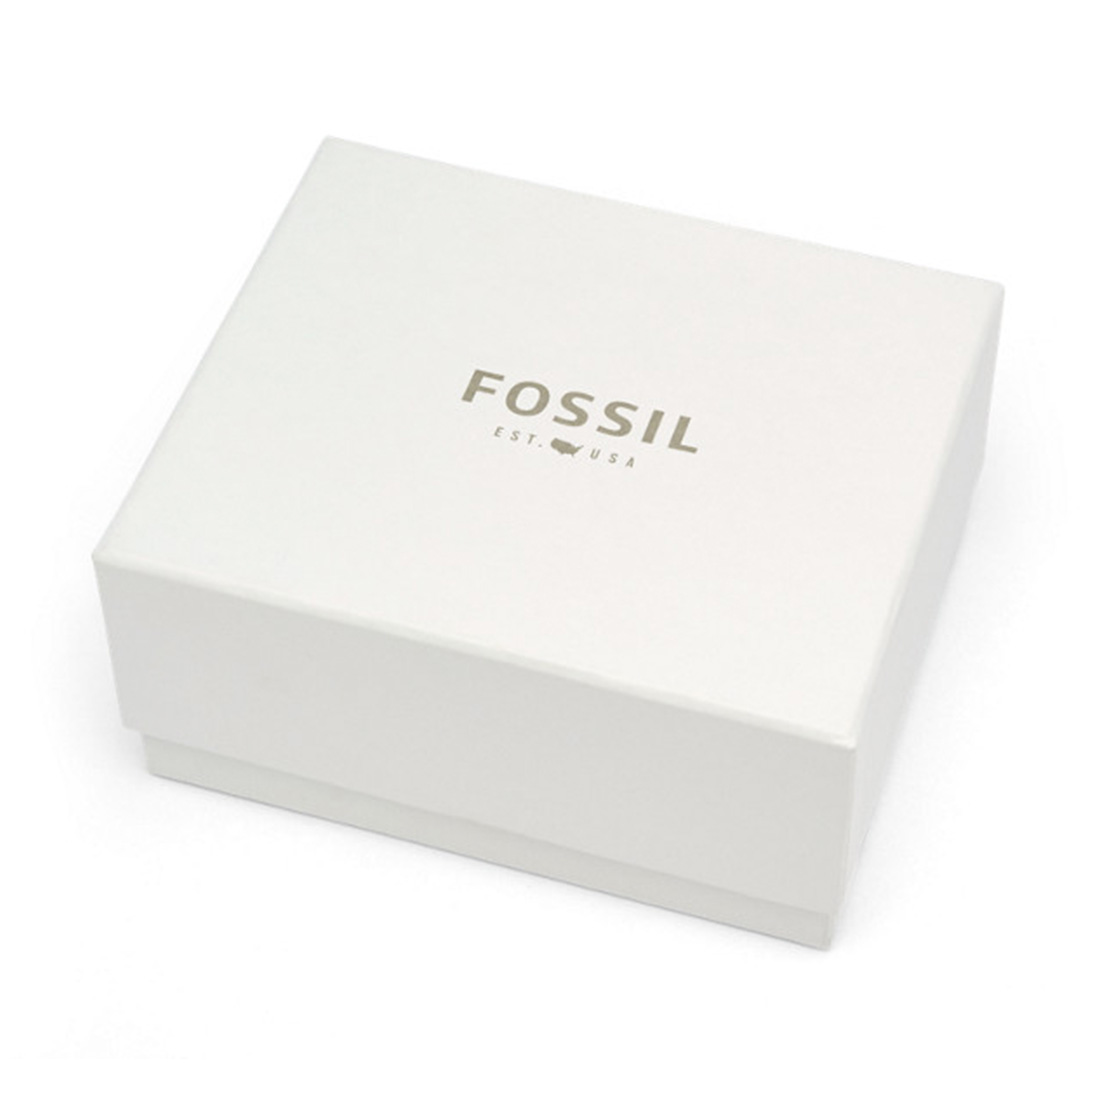 Fossil FS5061 Erkek Kol Saati